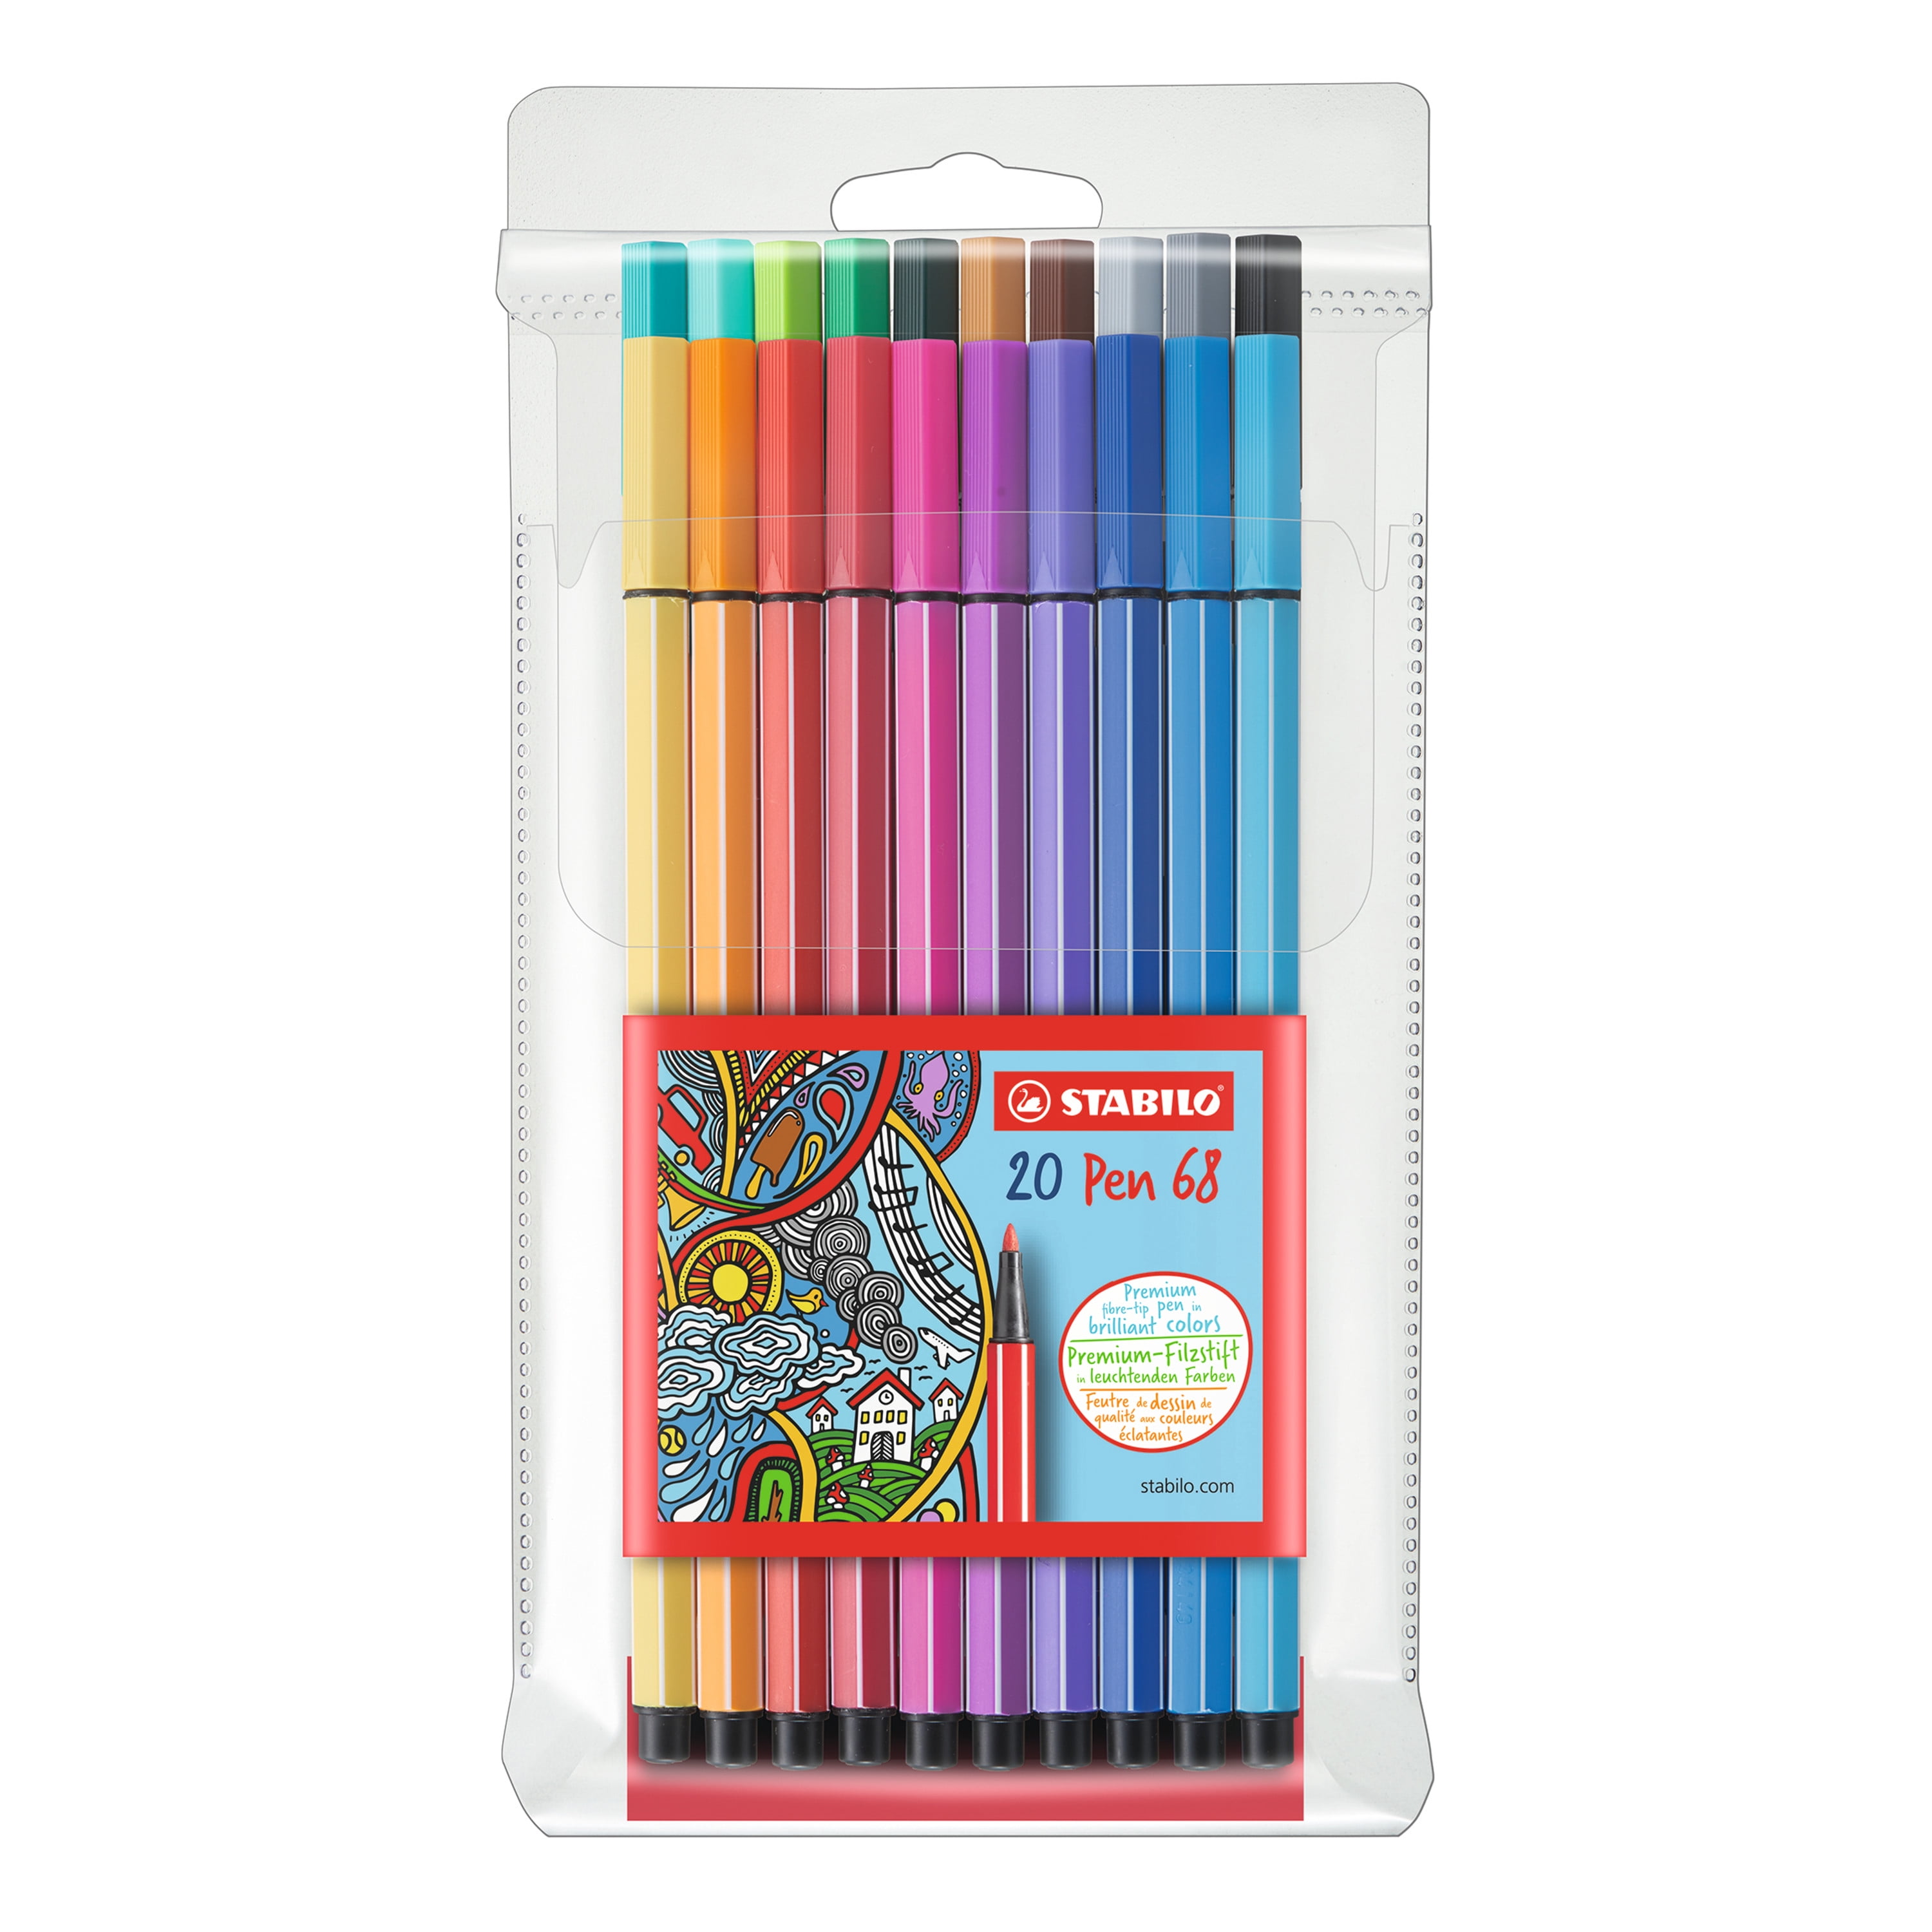 STABILO Pen 68 Premium Fibre Tip Pen Wallet of 10 Assorted Colours 